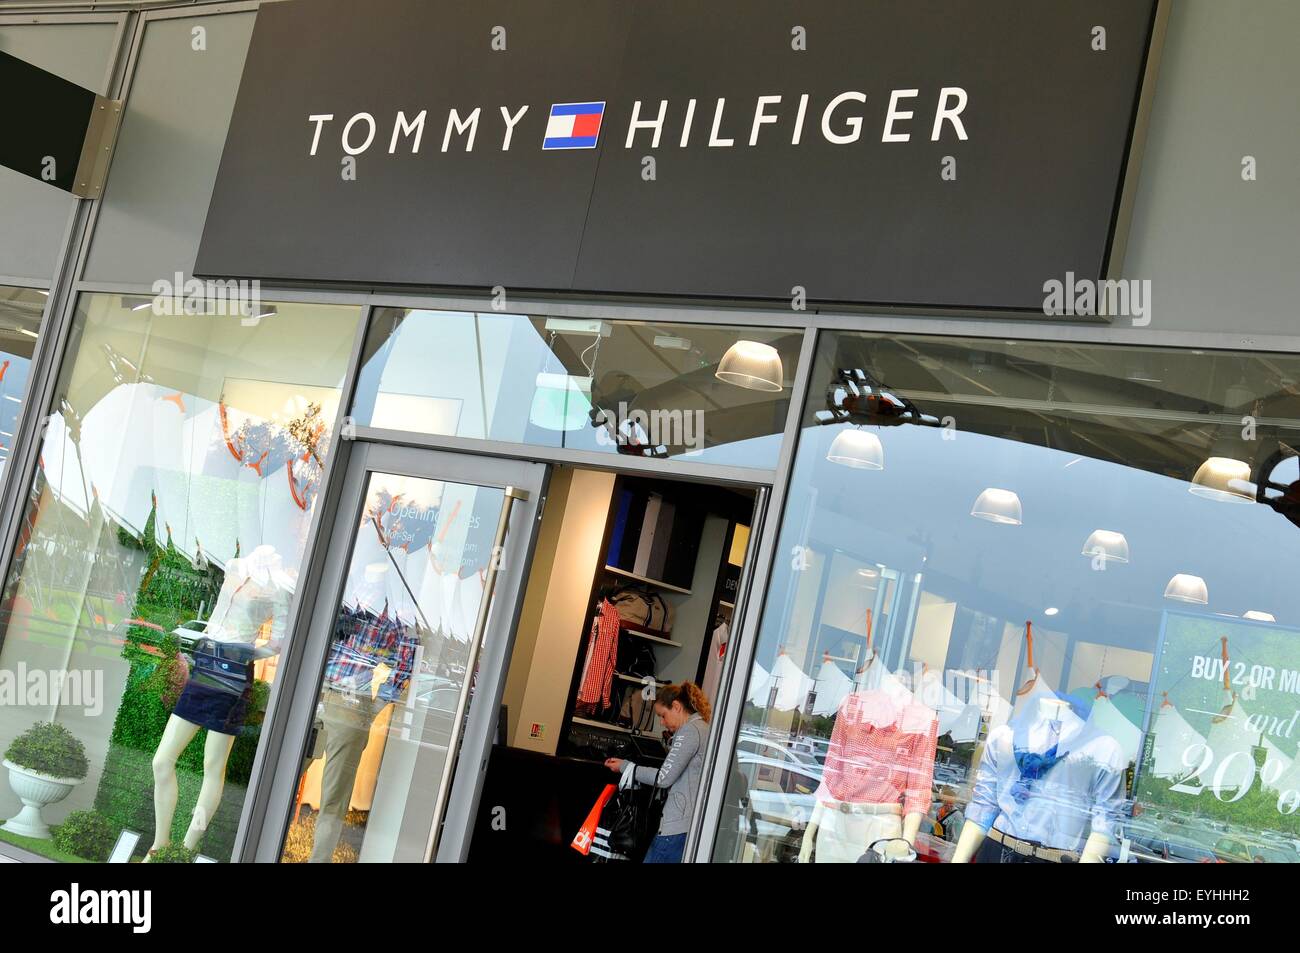 arabisk dejligt at møde dig køber Tommy Hilfiger Shop High Resolution Stock Photography and Images - Alamy